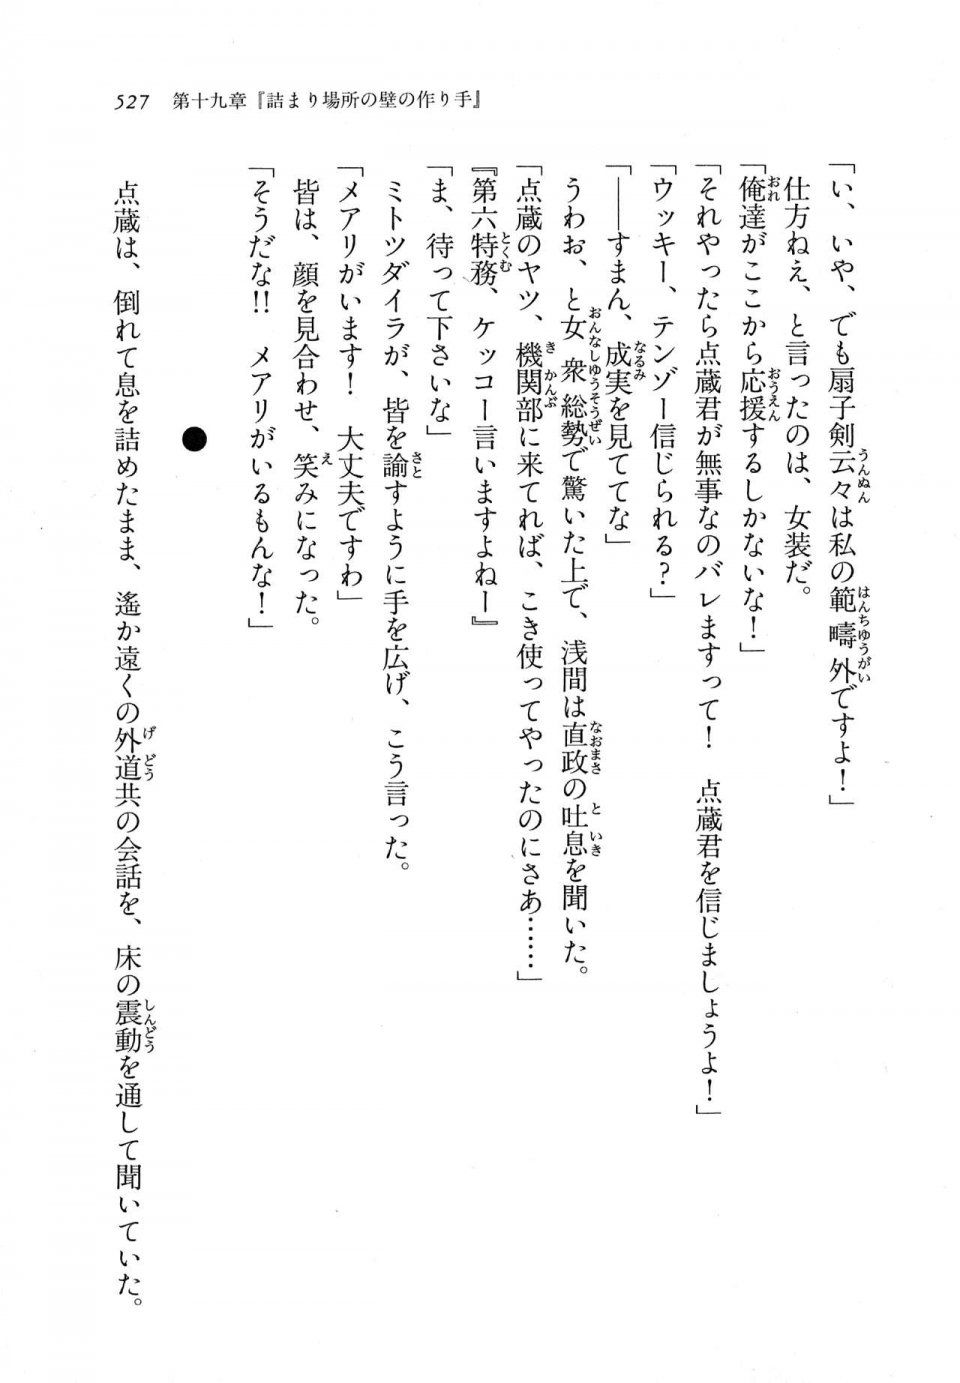 Kyoukai Senjou no Horizon LN Vol 11(5A) - Photo #527